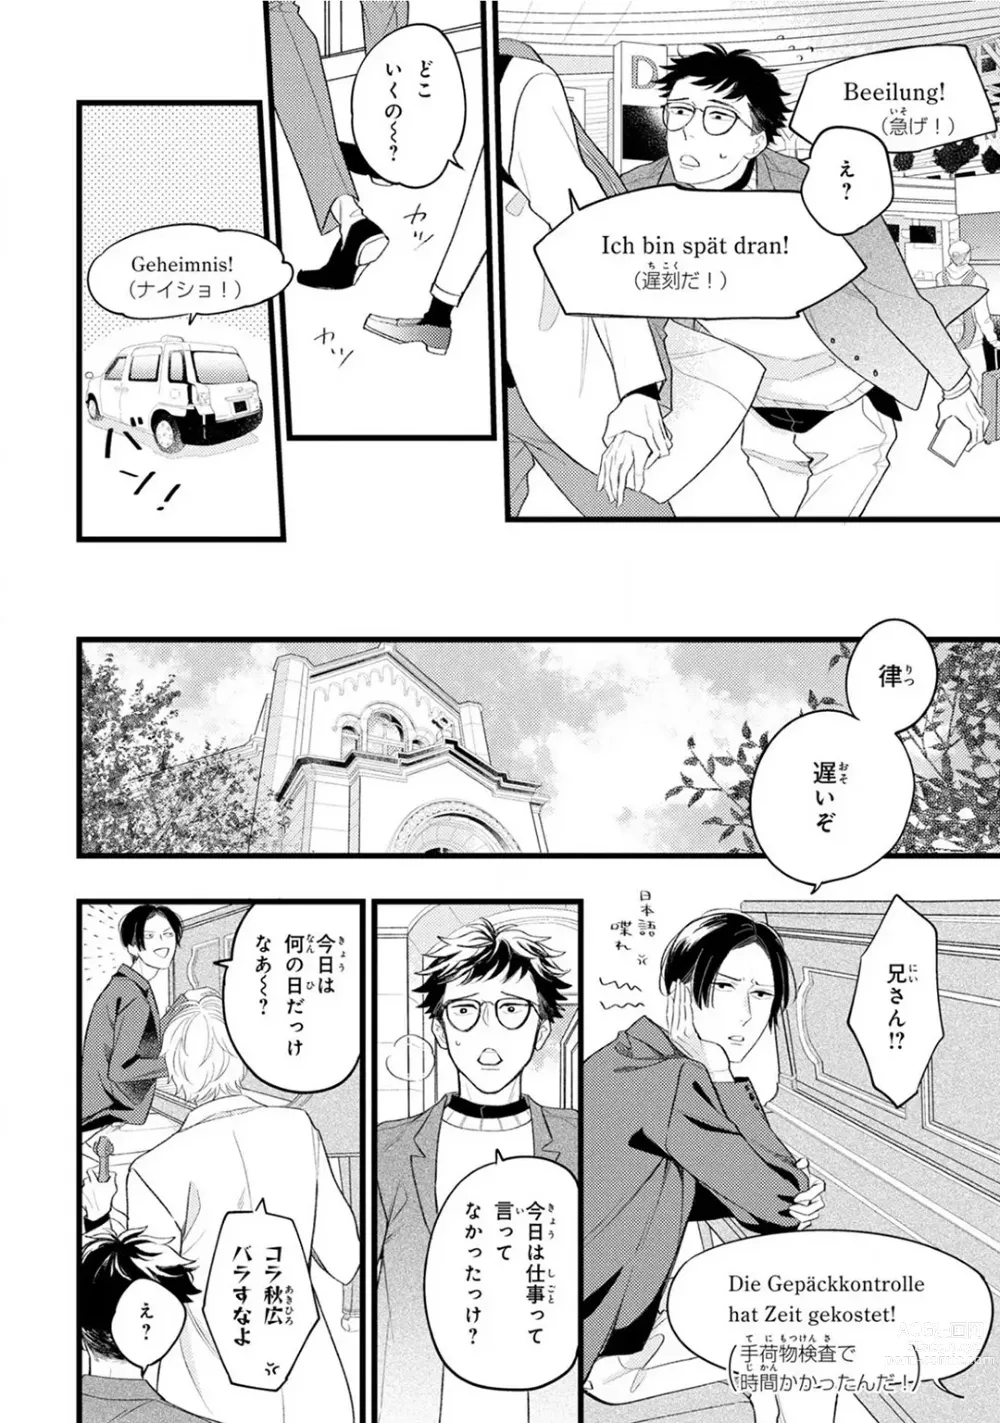 Page 230 of manga Boku no Muse - My muse